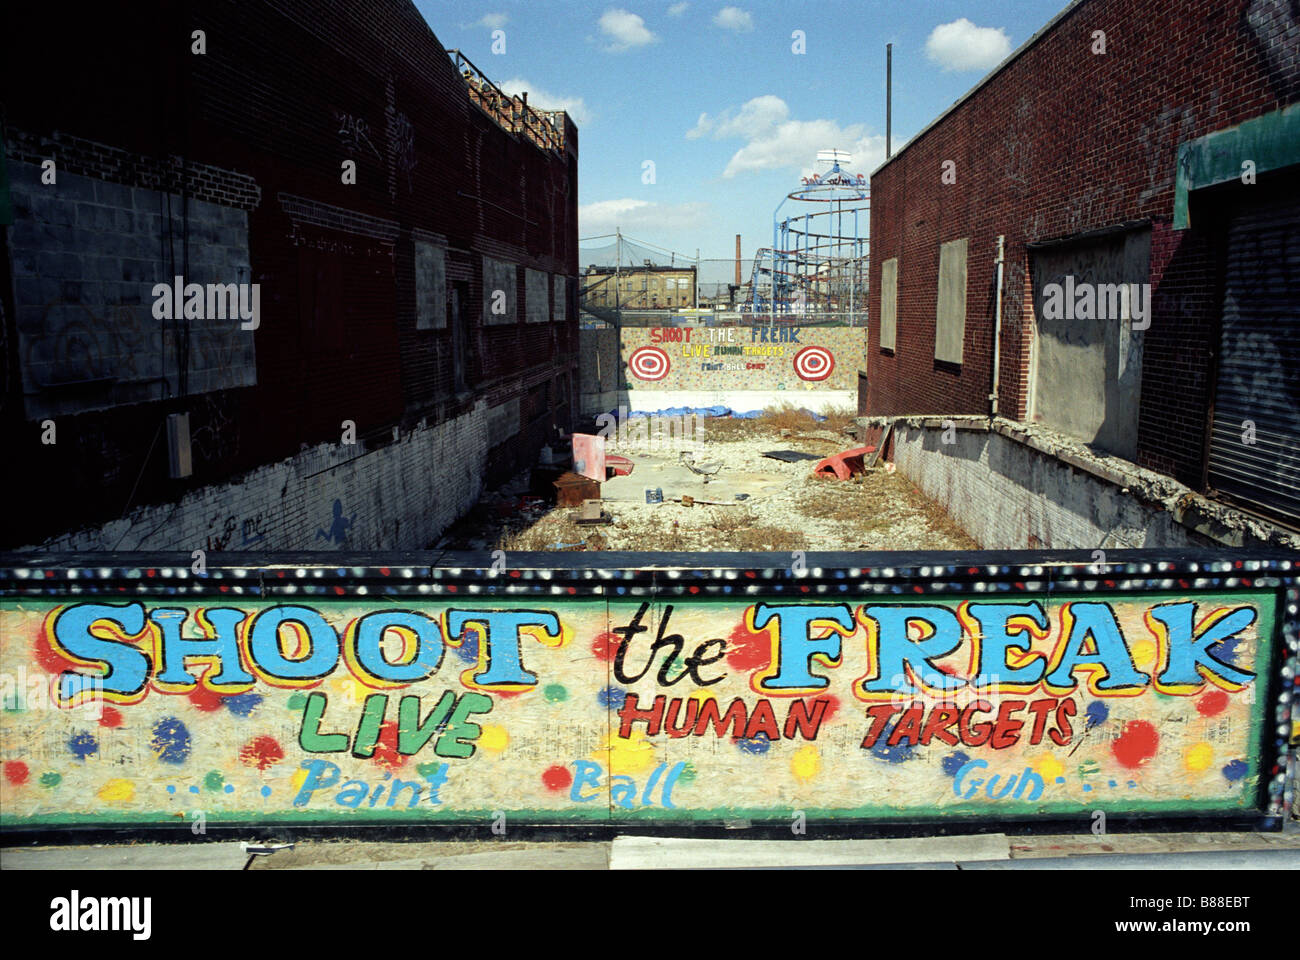 Schießen Sie die Freak Farbe Ballspiel Bestandteil der Vergnügungen befindet sich auf Coney Island Boardwalk im New Yorker Stadtteil Brooklyn. Stockfoto